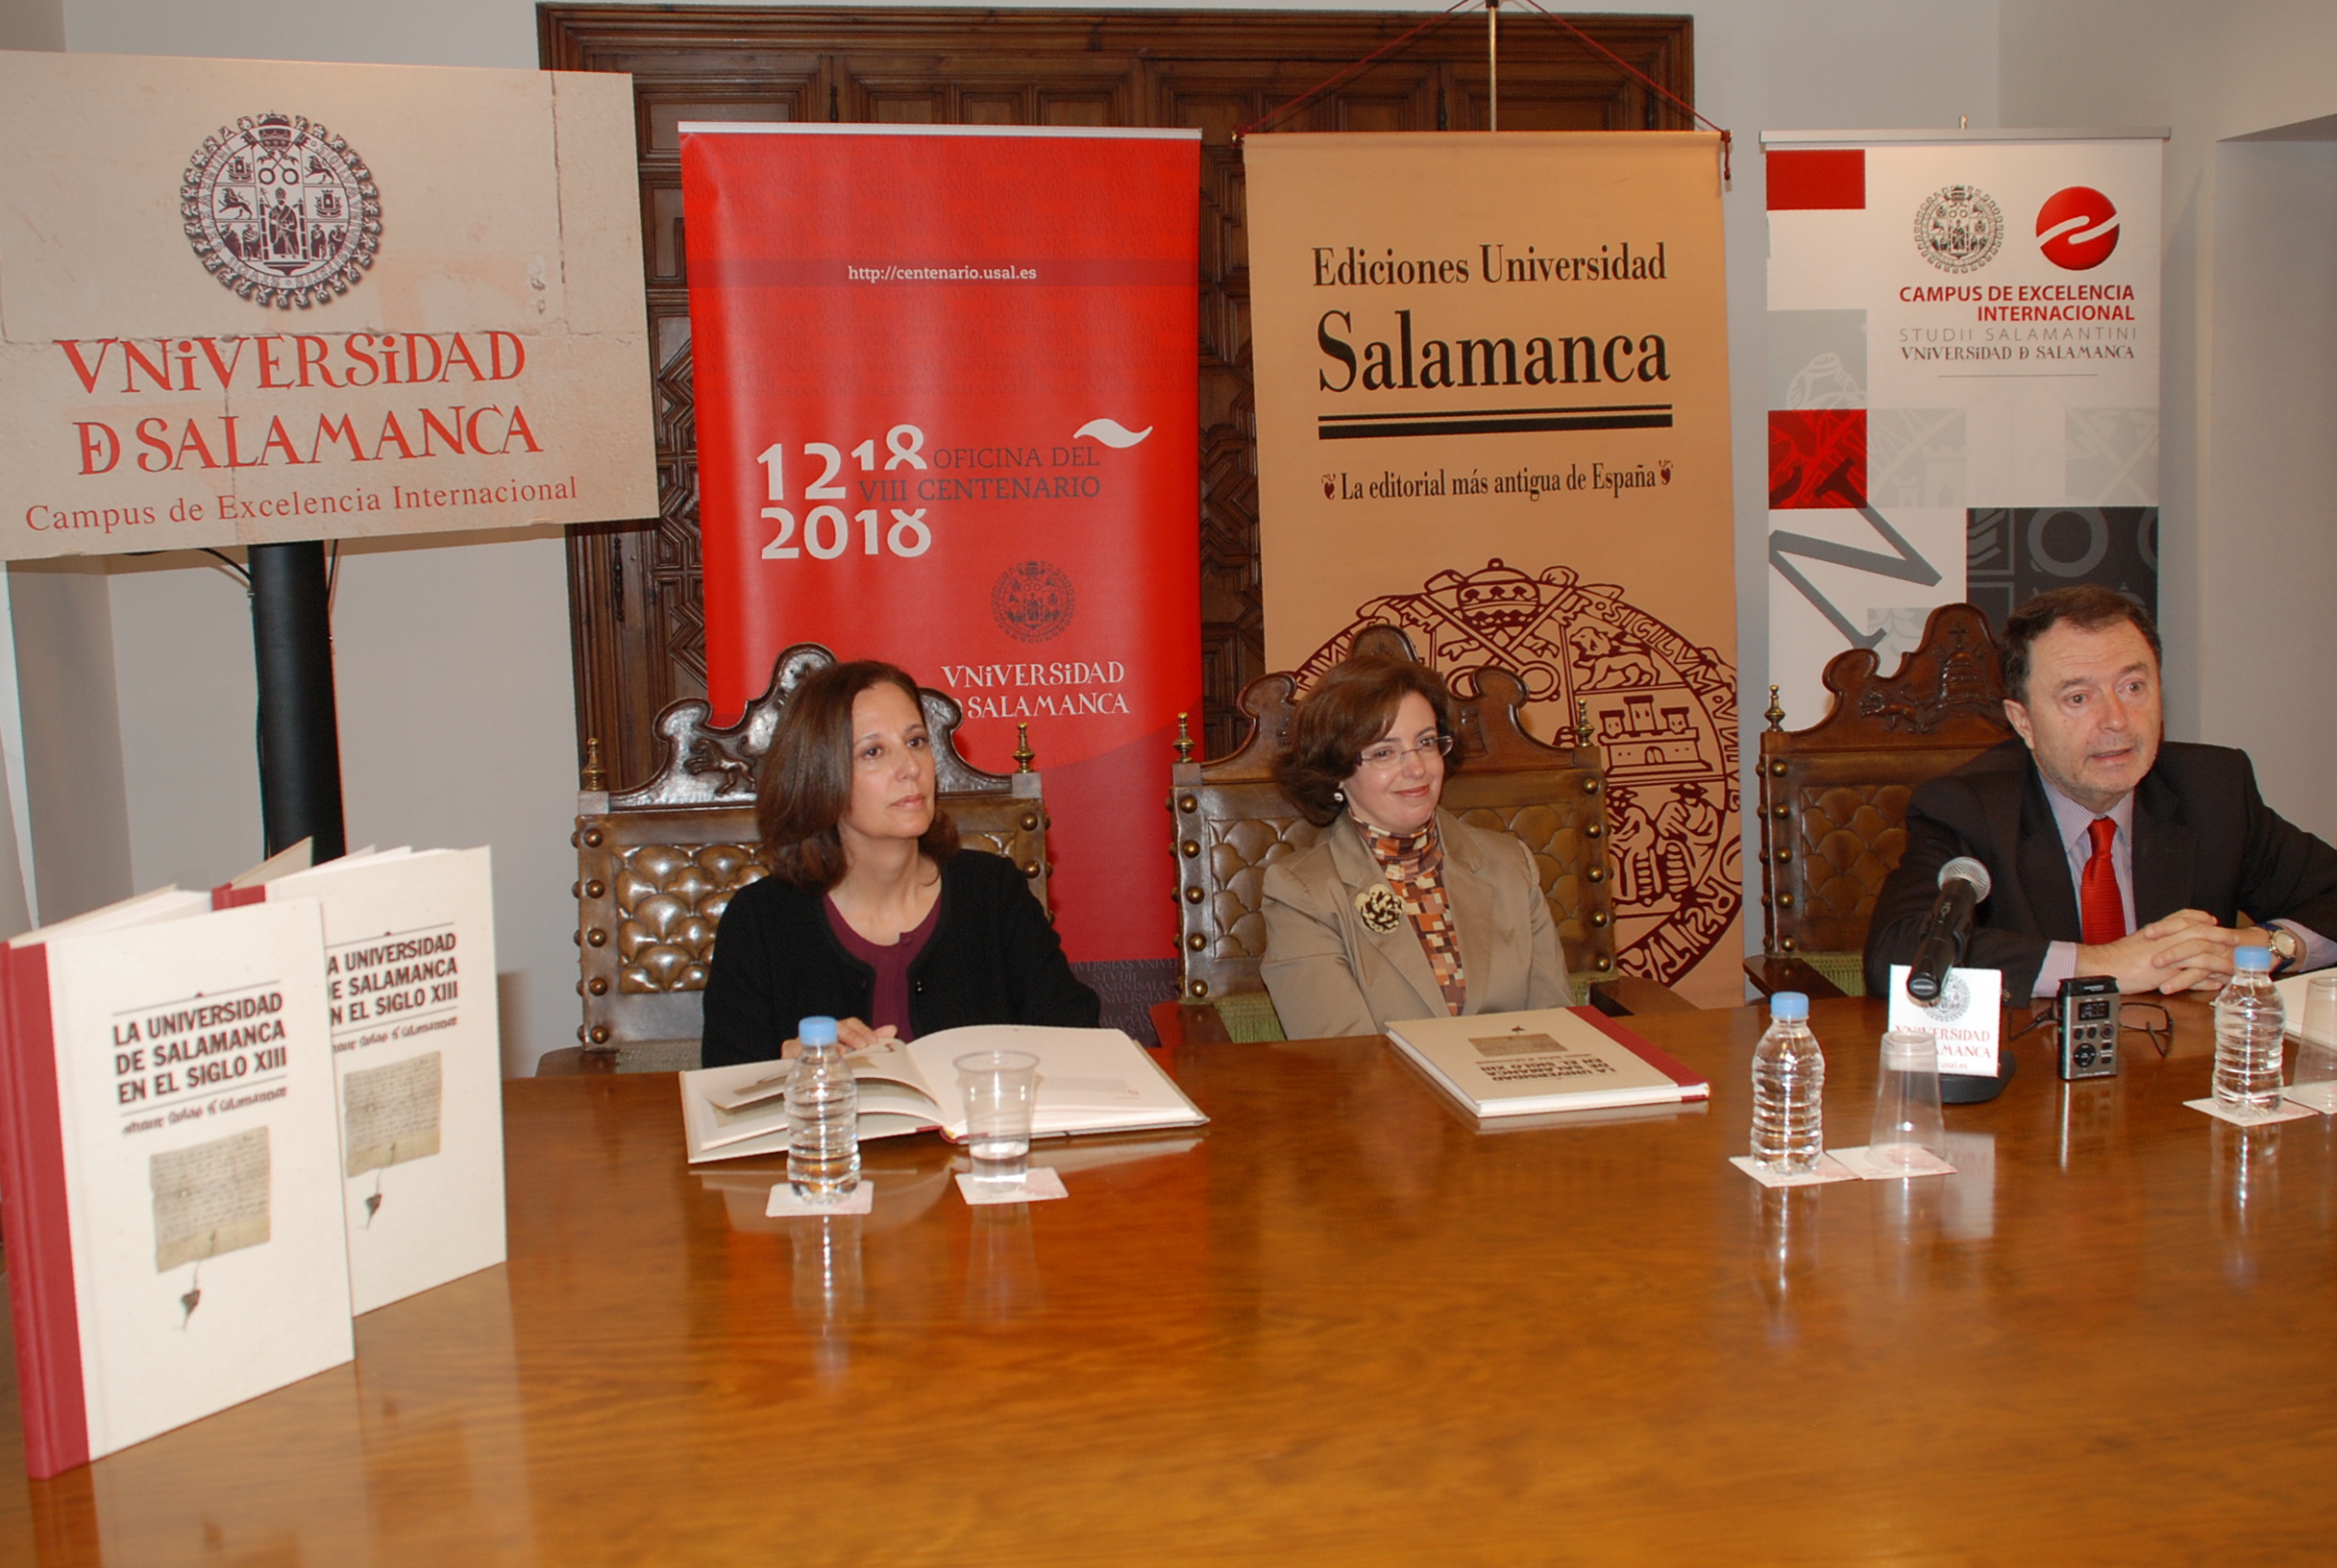 Presentación del libro "La Universidad de Salamanca en el siglo XIII. Constituit scholas fieri Salamanticae"